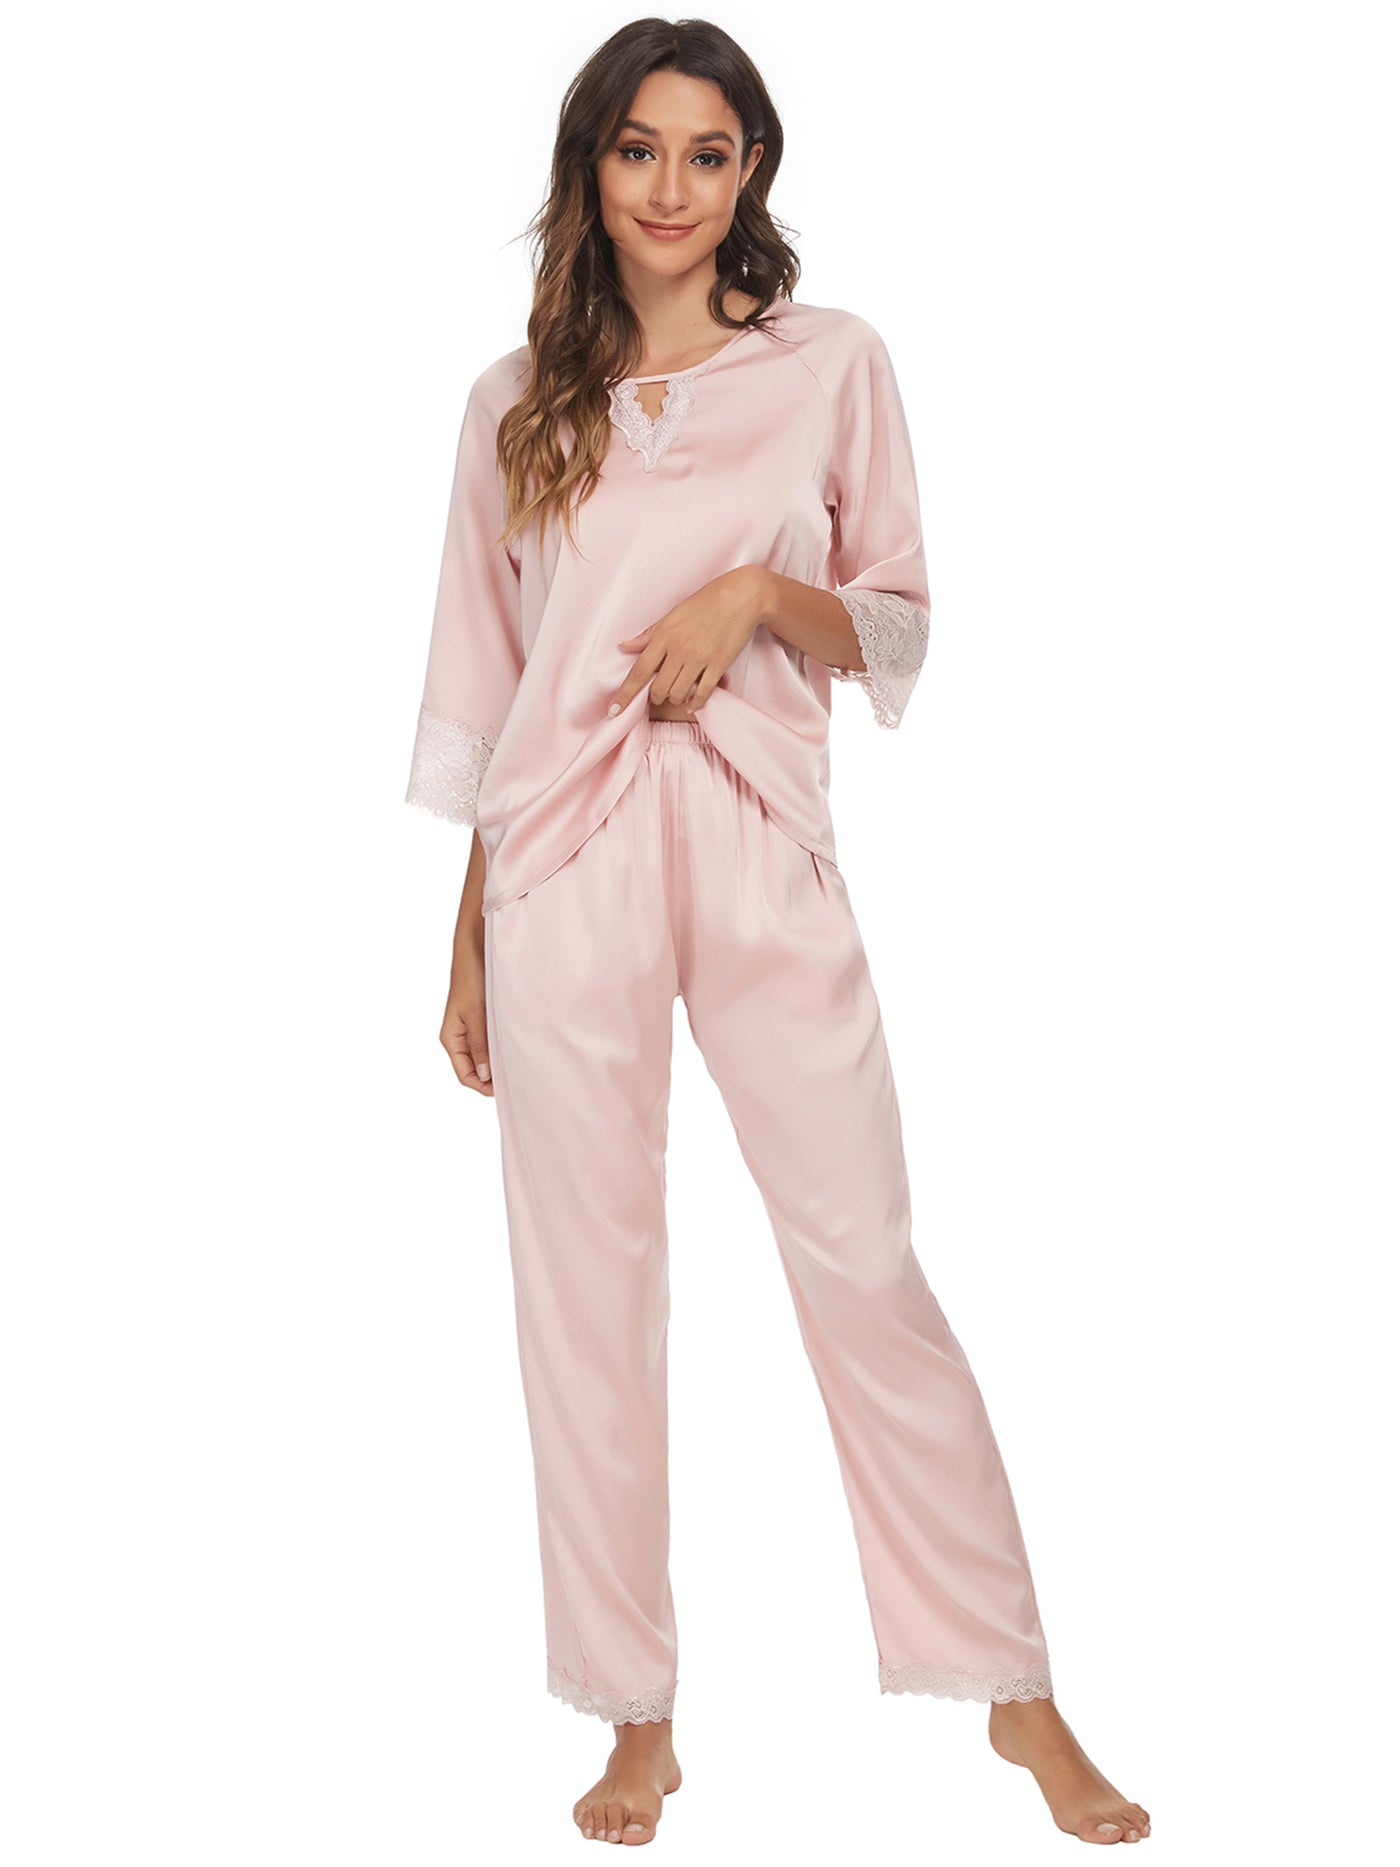 Bublédon Women's Satin Sleepwear Long Sleeves Pajama Set